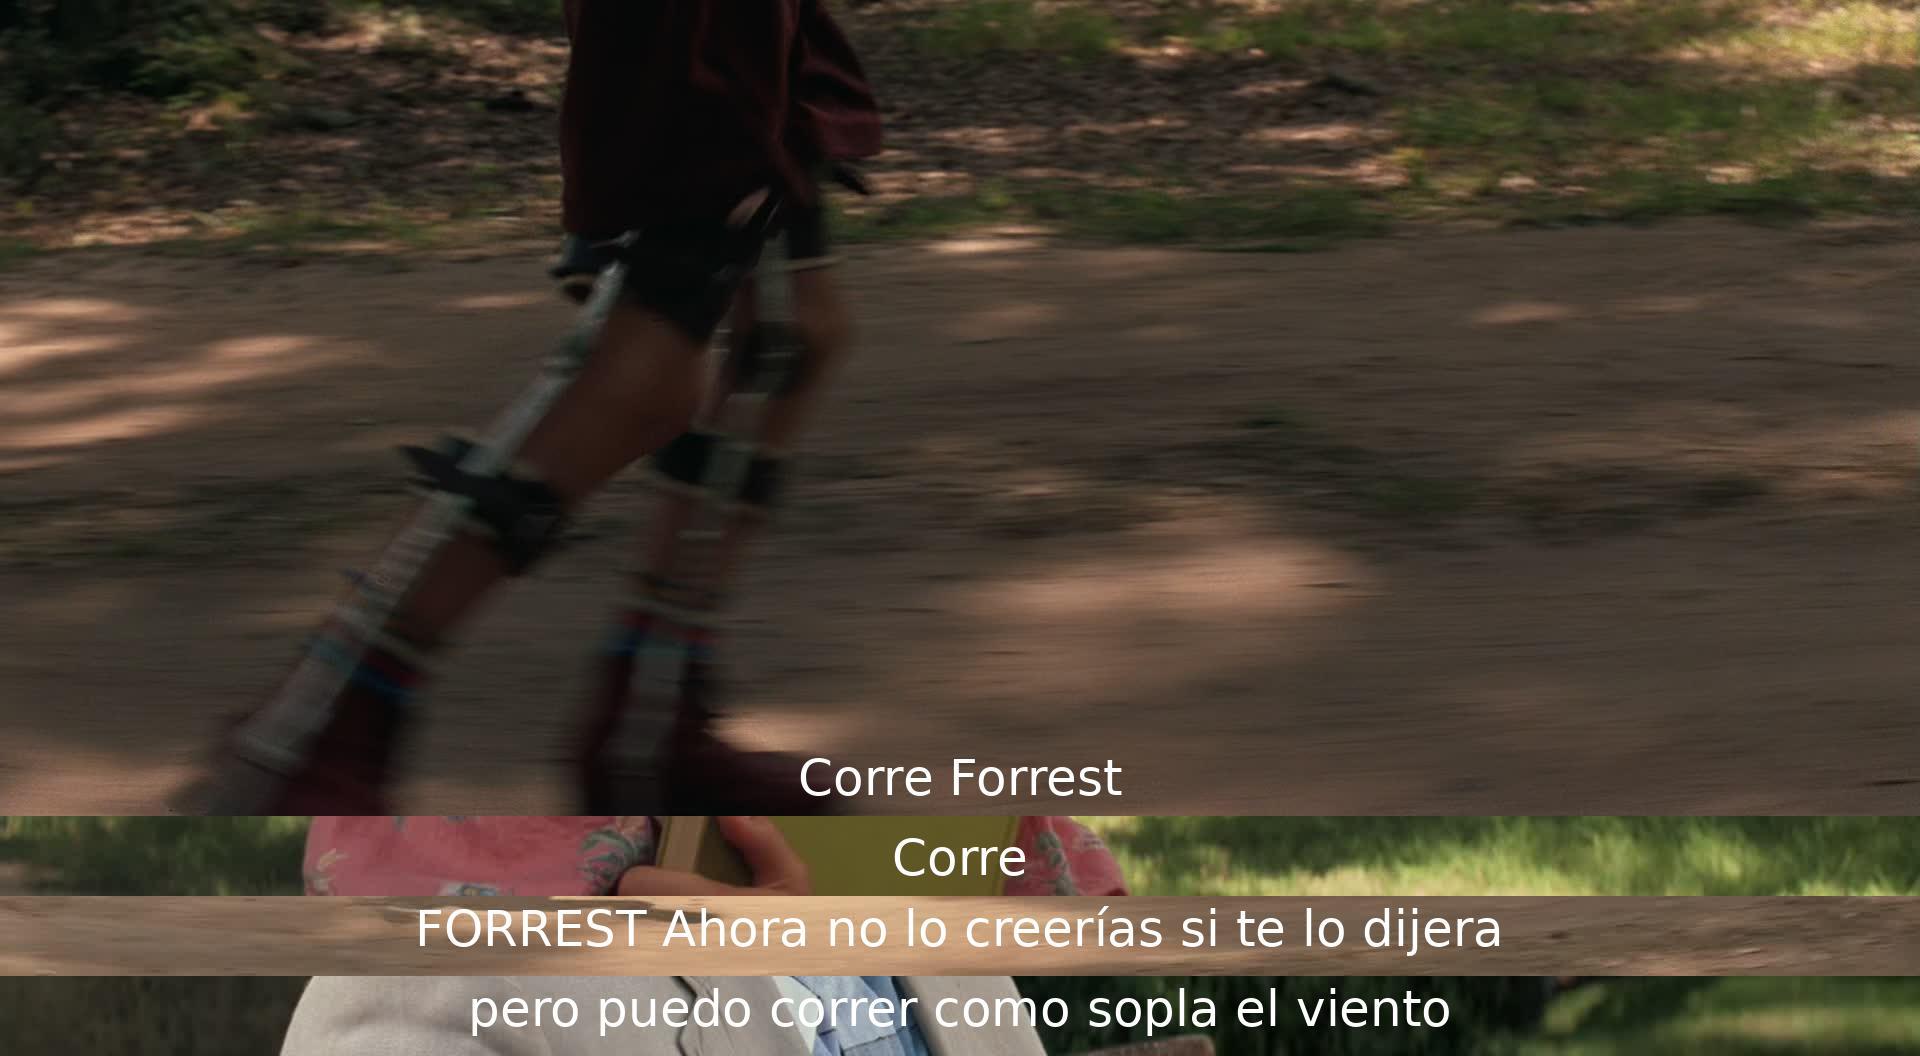 Un personaje llamado Forrest es alentado a correr rápidamente por otro. Forrest revela que puede correr muy rápido, aunque la persona no lo creería si se lo contara.